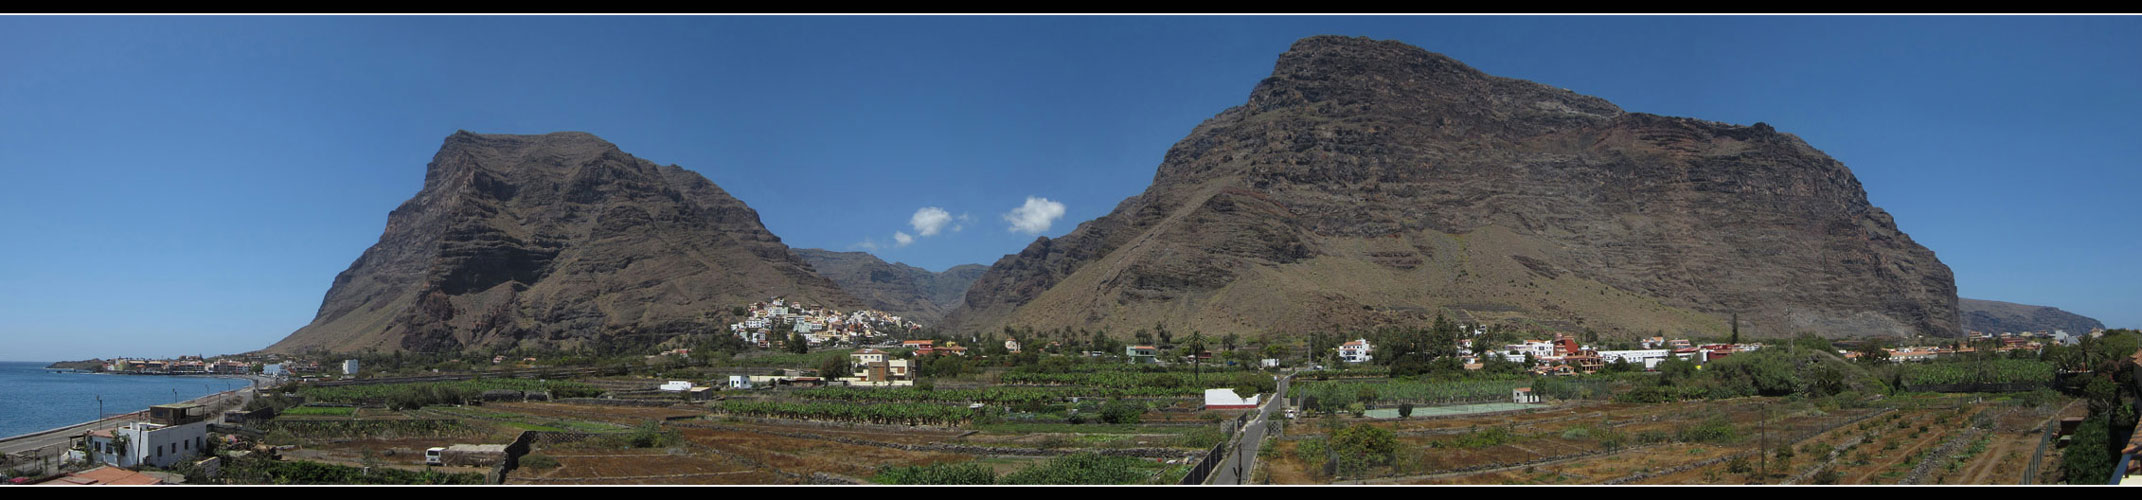 La Gomera - Valle Gran Rey - 2014 - 4